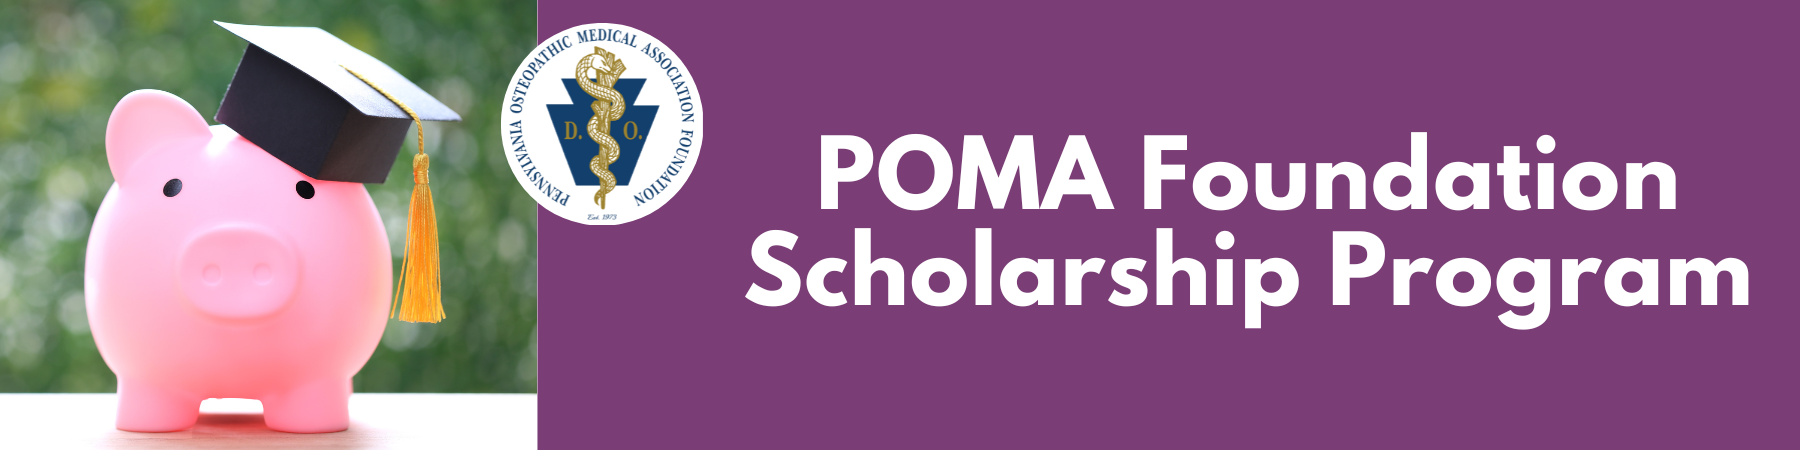 POMAF Scholarships